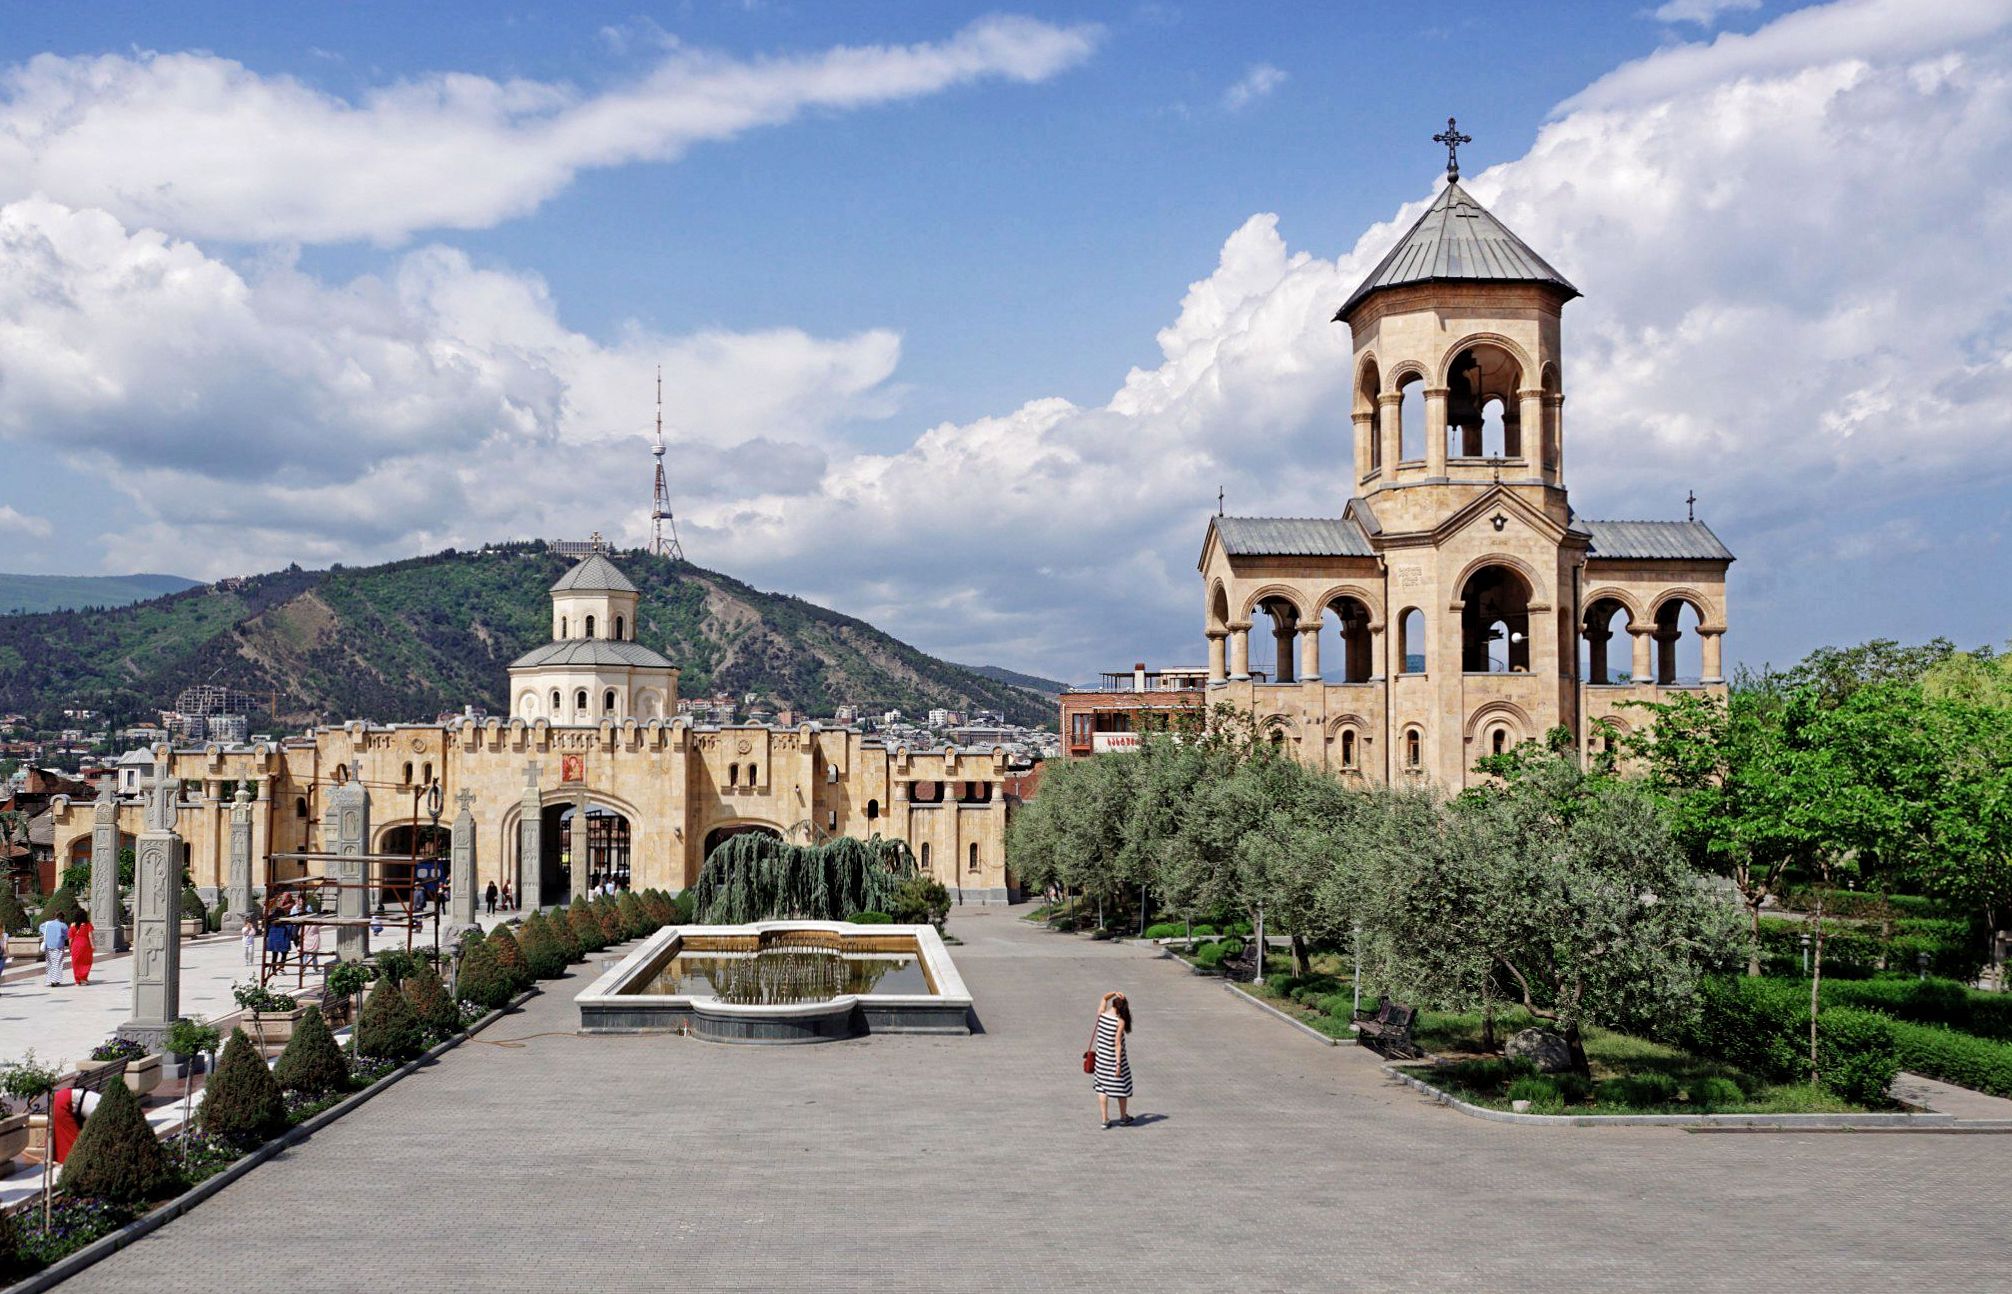 Stolica Gruzji, czyli Tbilisi